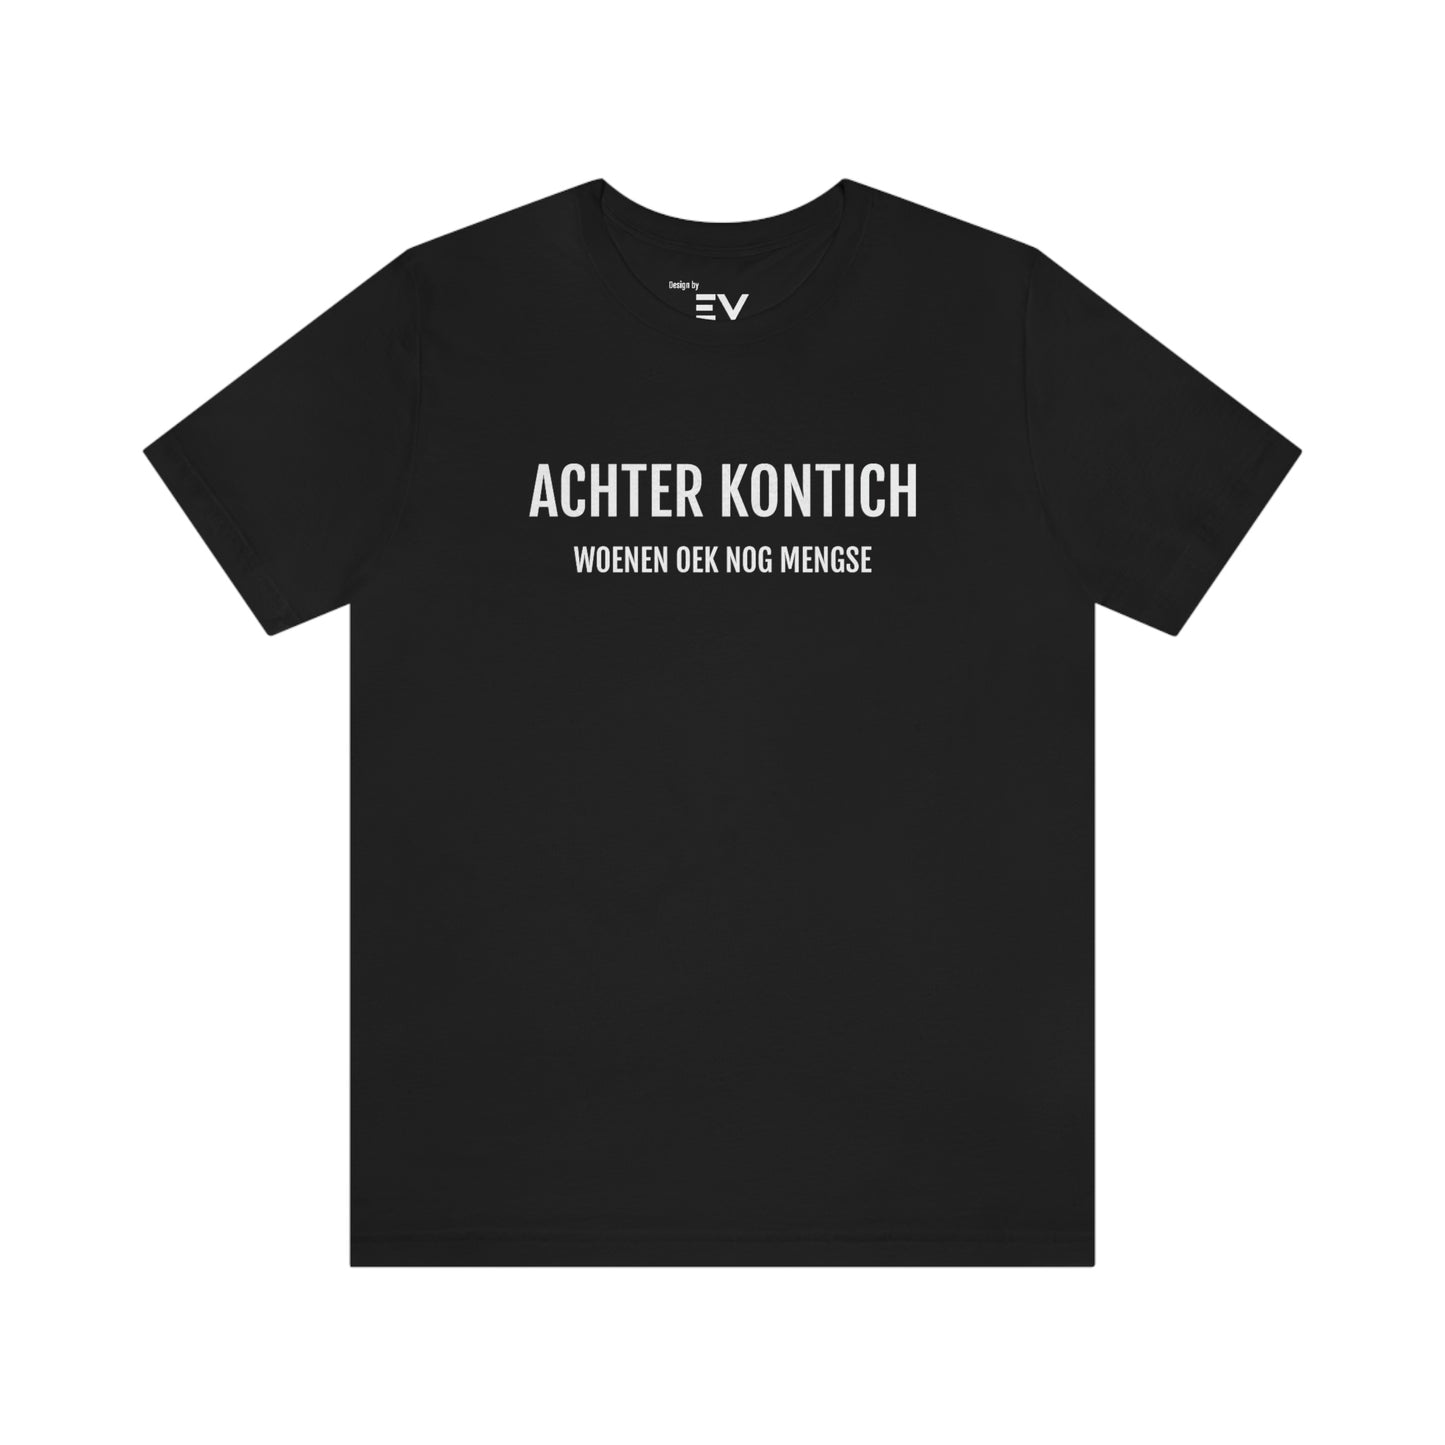 T-shirt in Antwerps dialect in zwart en wit